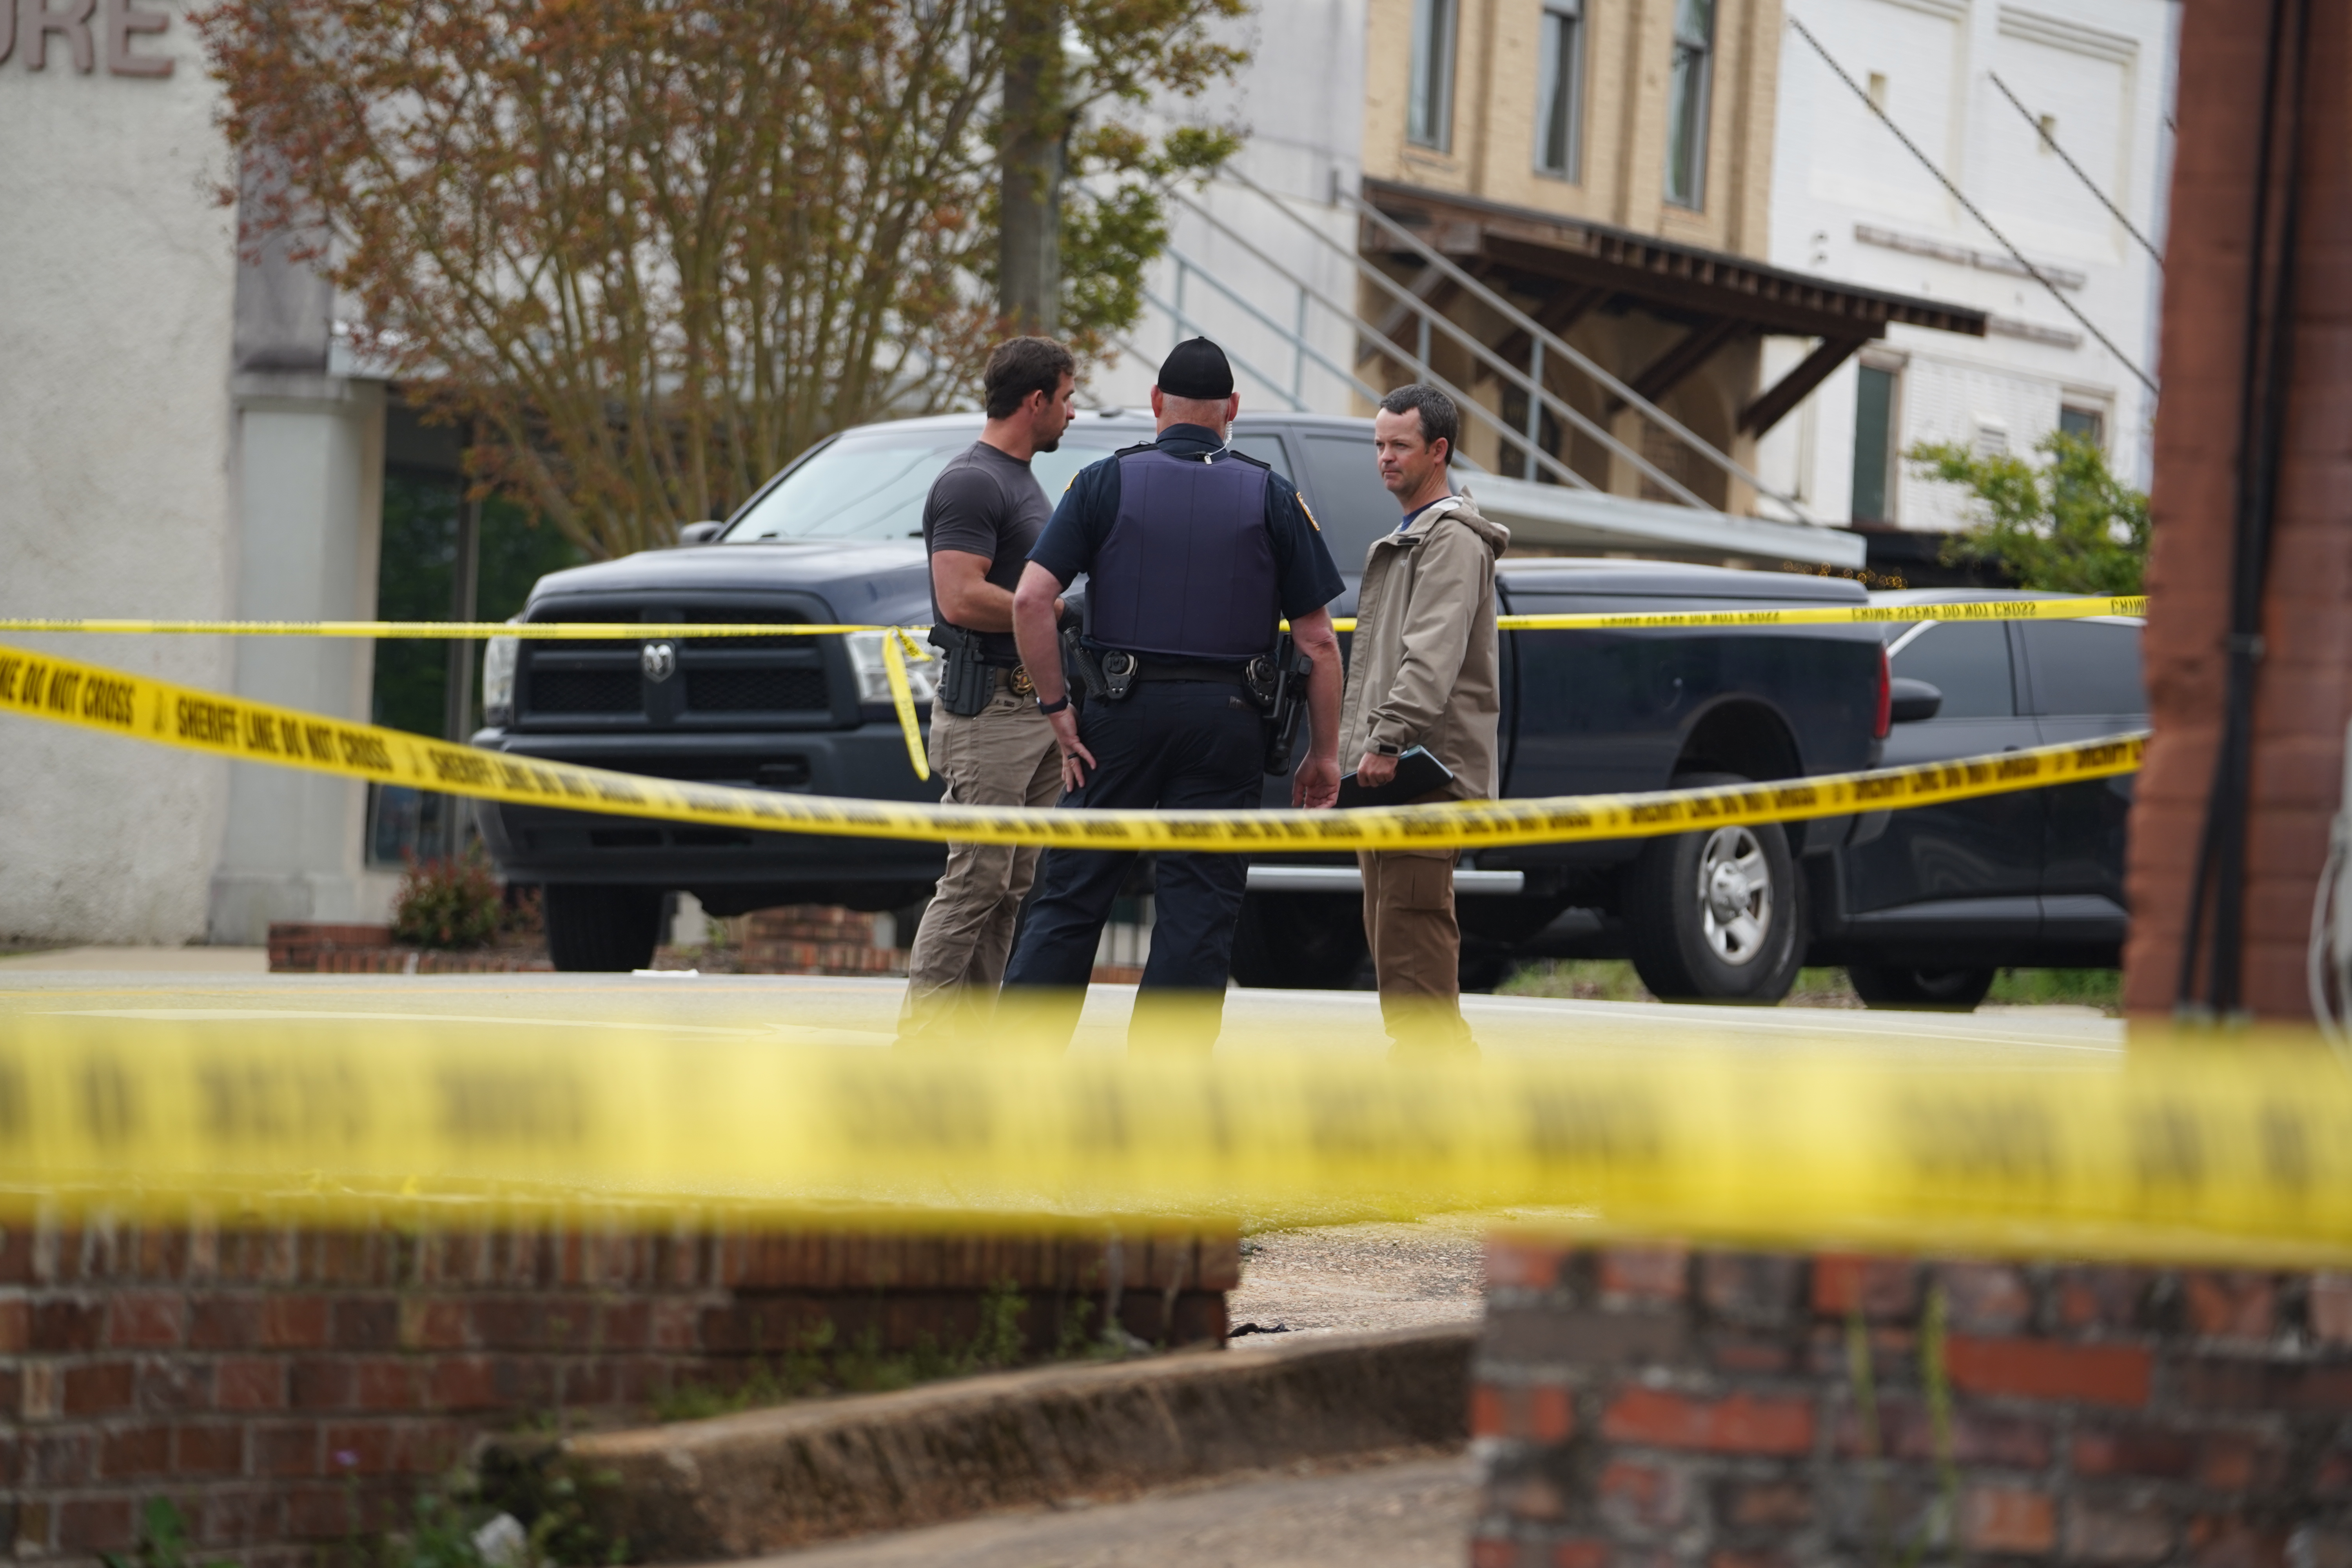 Police at the crime scene in Dadeville, Alabama